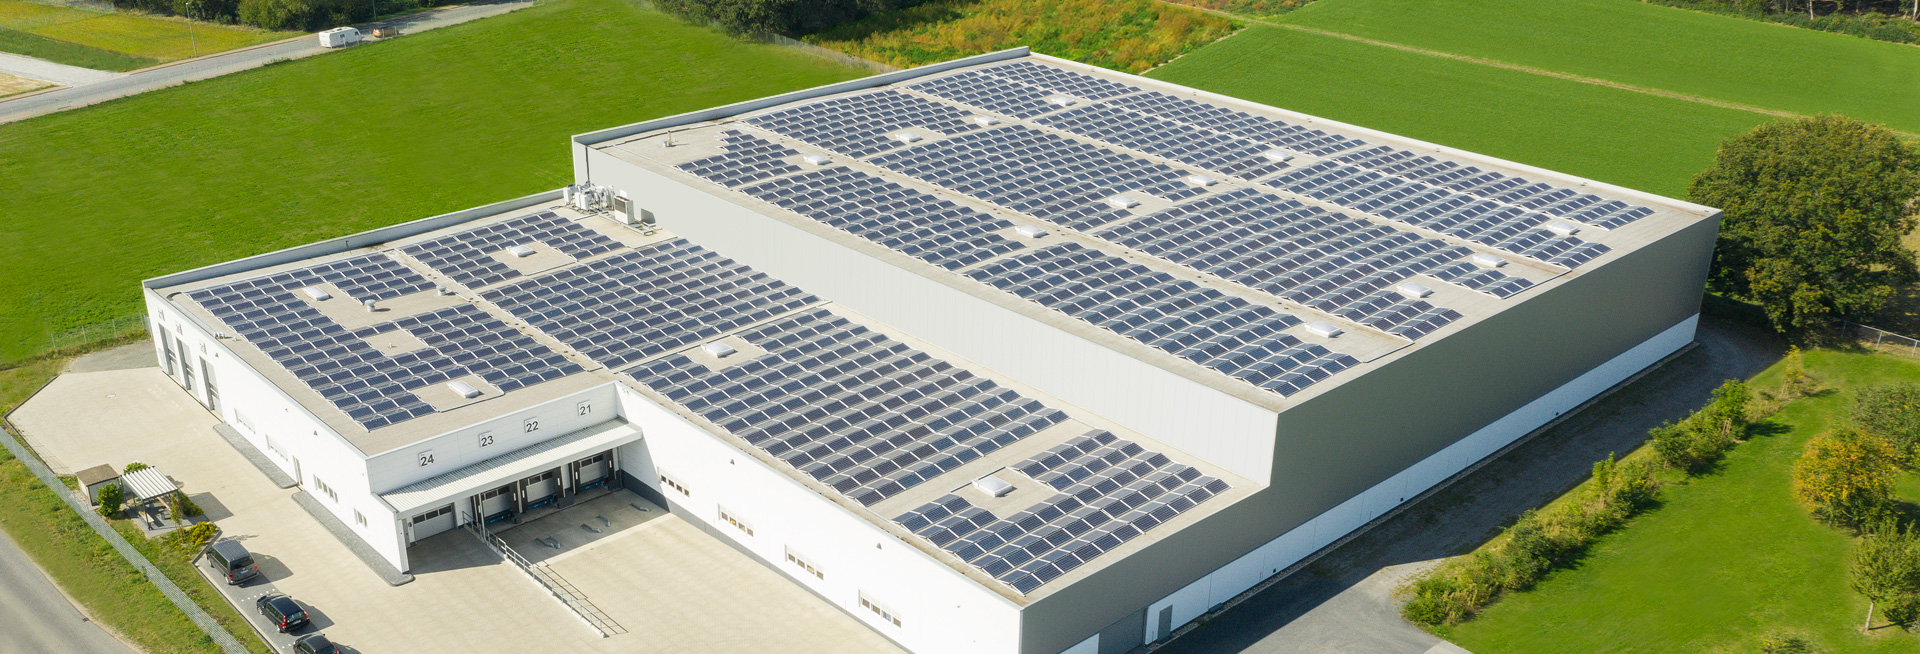 Das Bild zeigt eine der Fulfillmenthallen von RHIEM, deren Dach mit Solarzellen zur Stromproduktion bestückt ist.